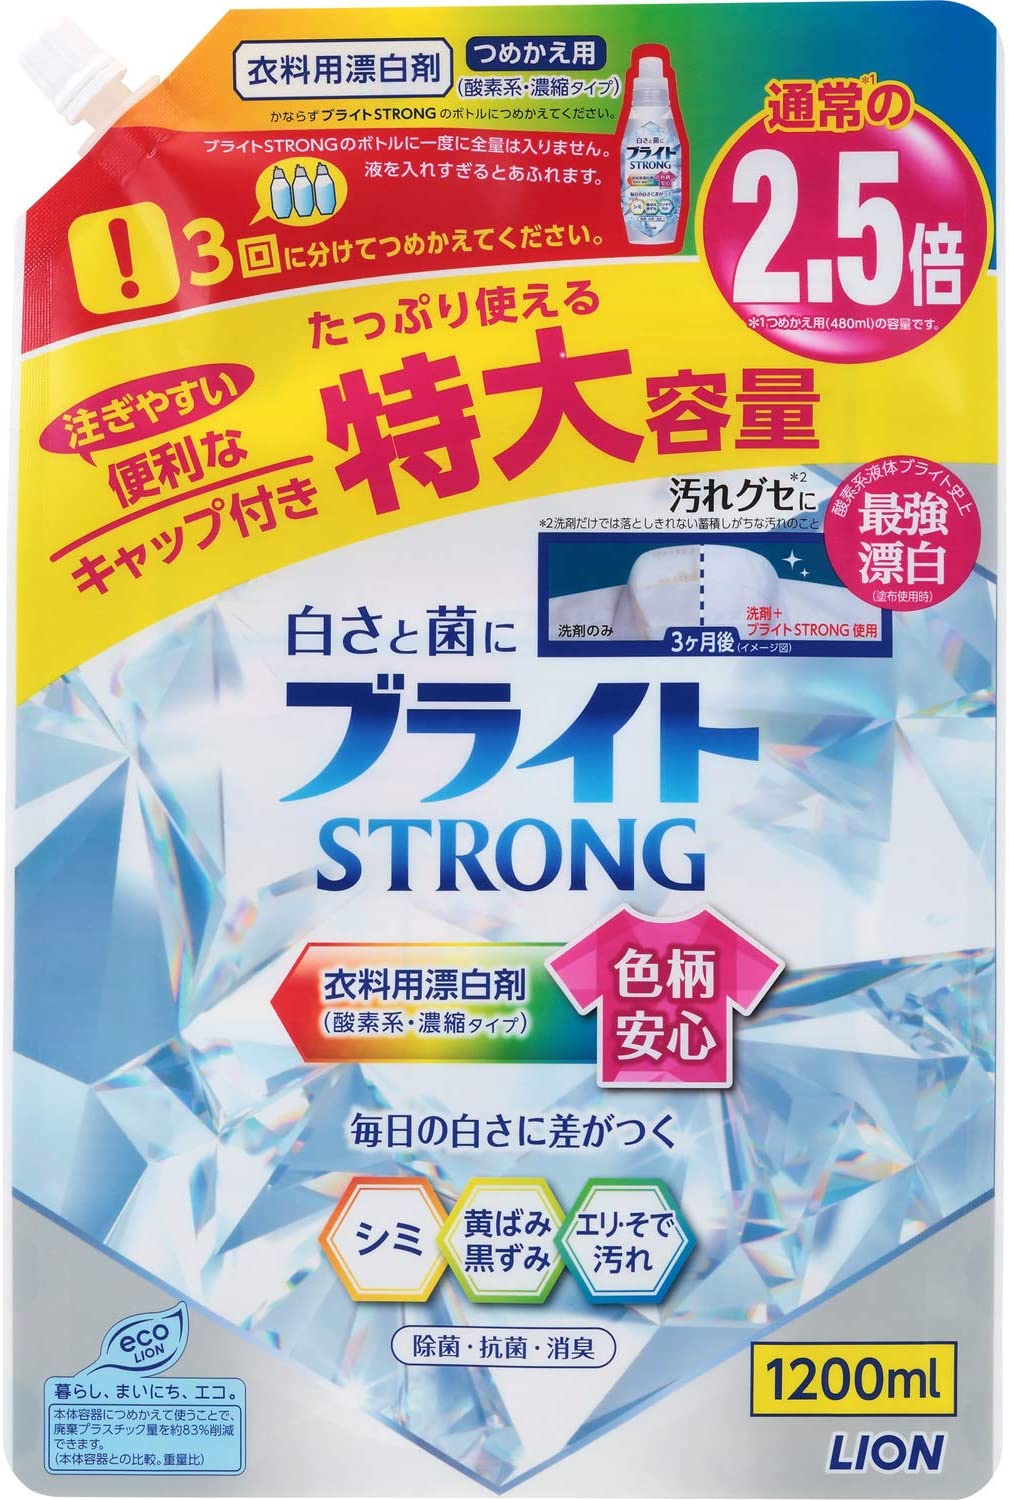 Lion Bright Strong Гель-отбеливатель кислородный для стройких загрязнений Супер Яркость с антибактериальным эффектом 1200 мл в мягкой упаковке